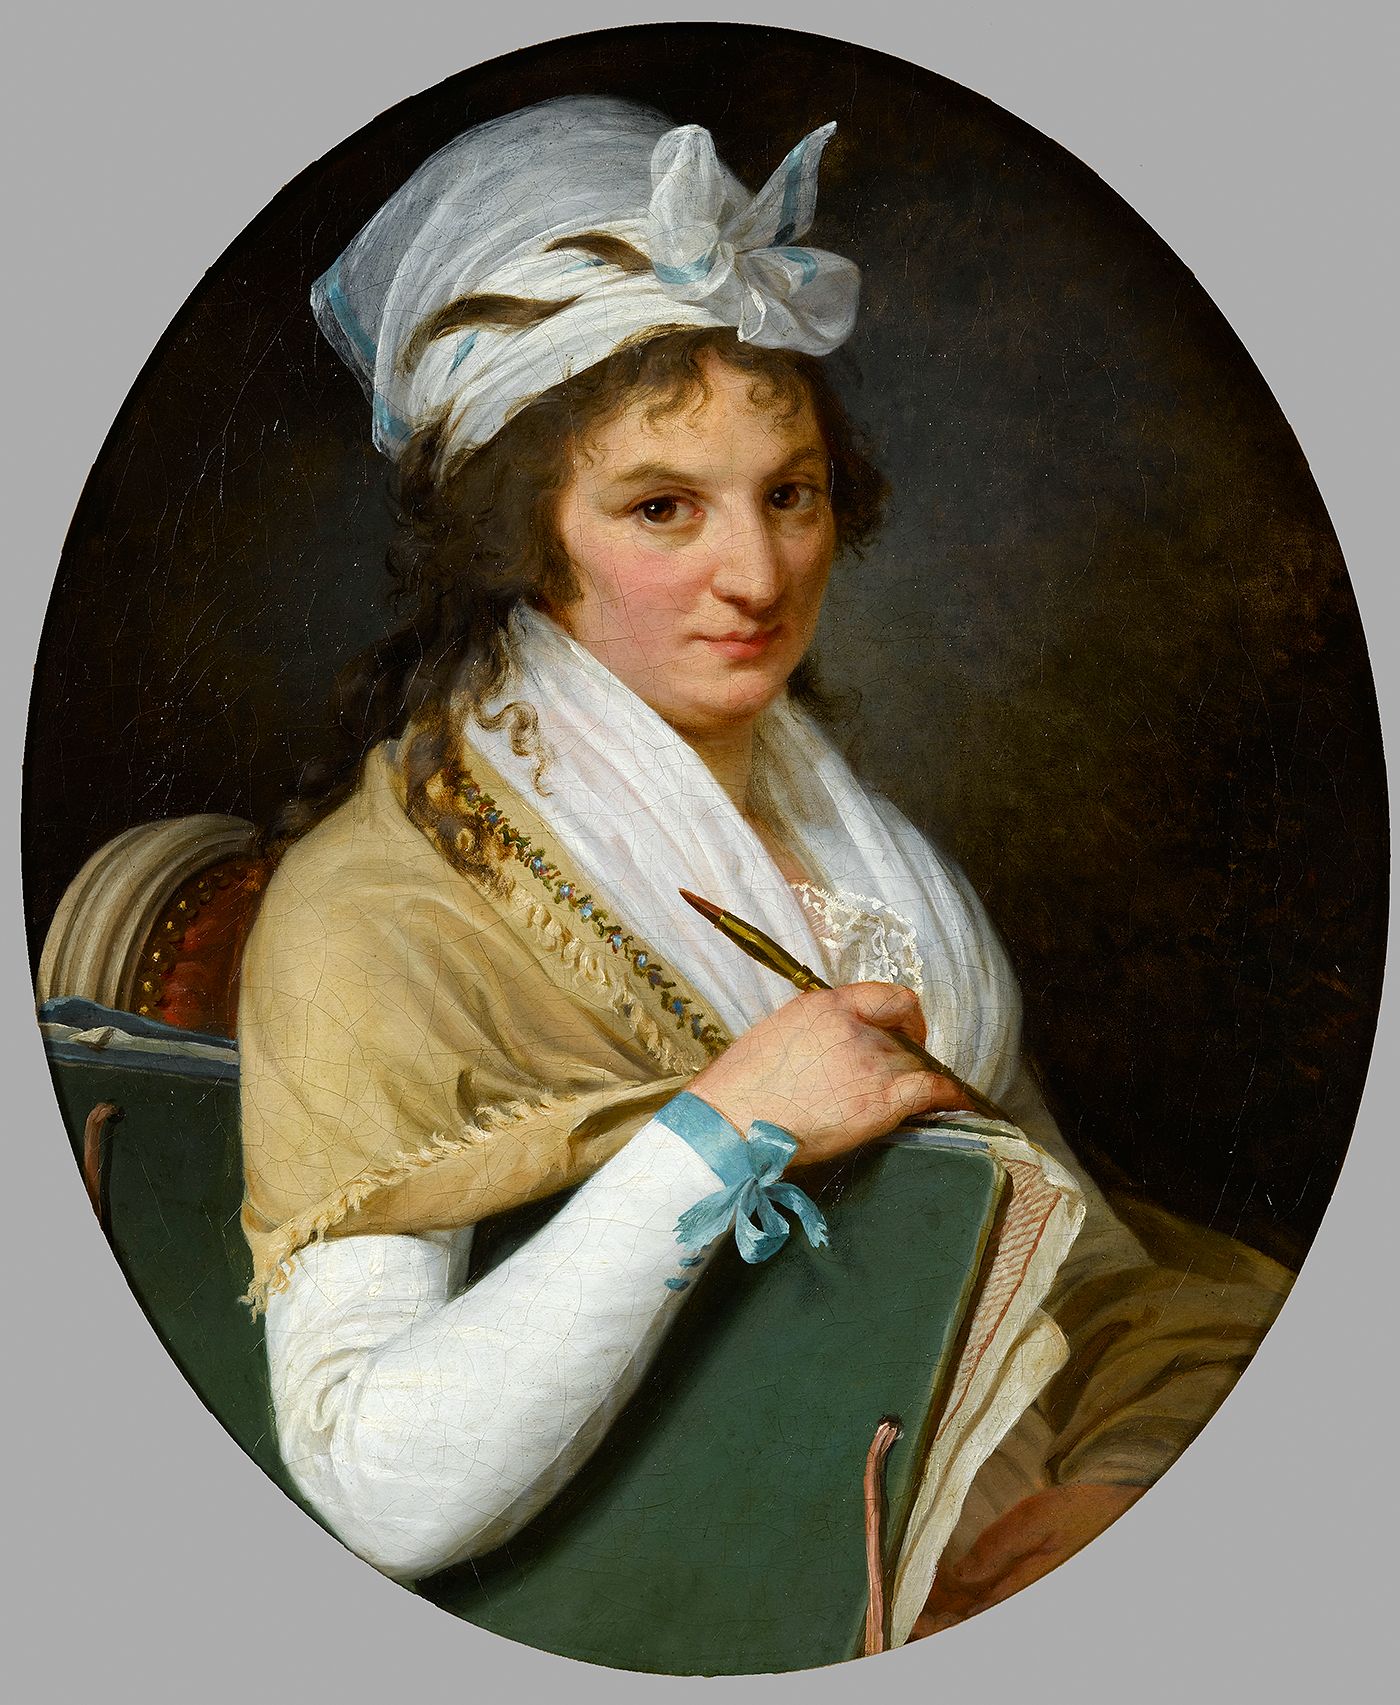  Portrait de l'artiste. Marie-Adélaïde DURIEUX